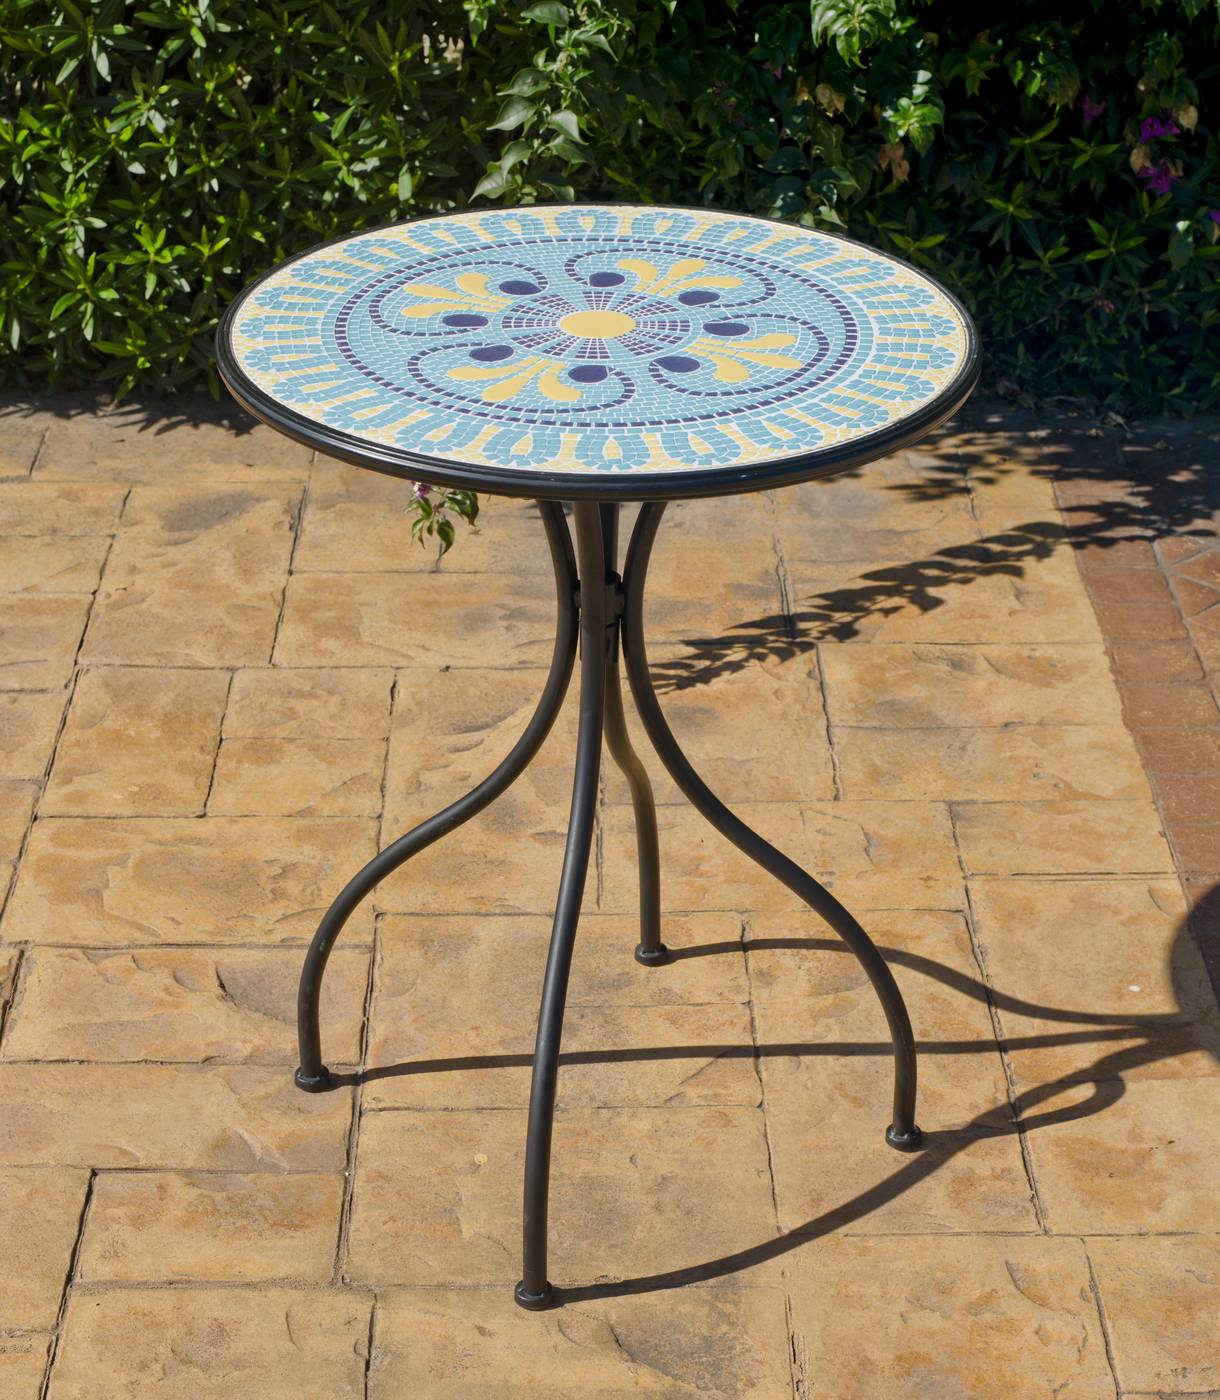 Conjunto Mosaico Dorian-Valencia - Mesa de forja color antracita, con tablero mosaico de 60 cm + 2 sillones apilables de wicker